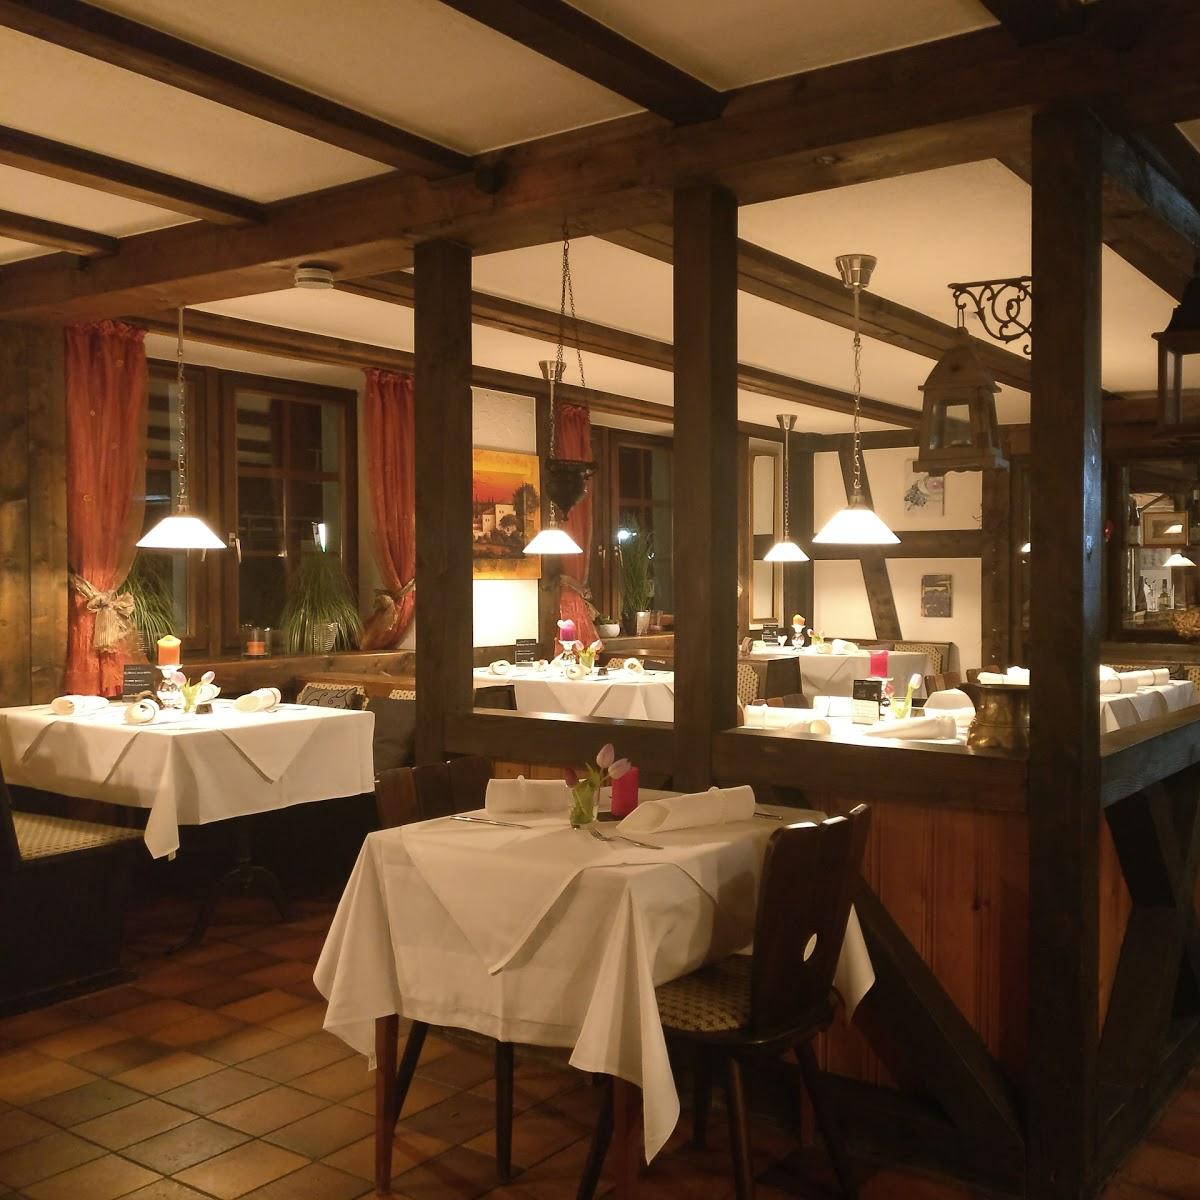 Restaurant "Landgasthaus Strauss" in Hohentengen am Hochrhein